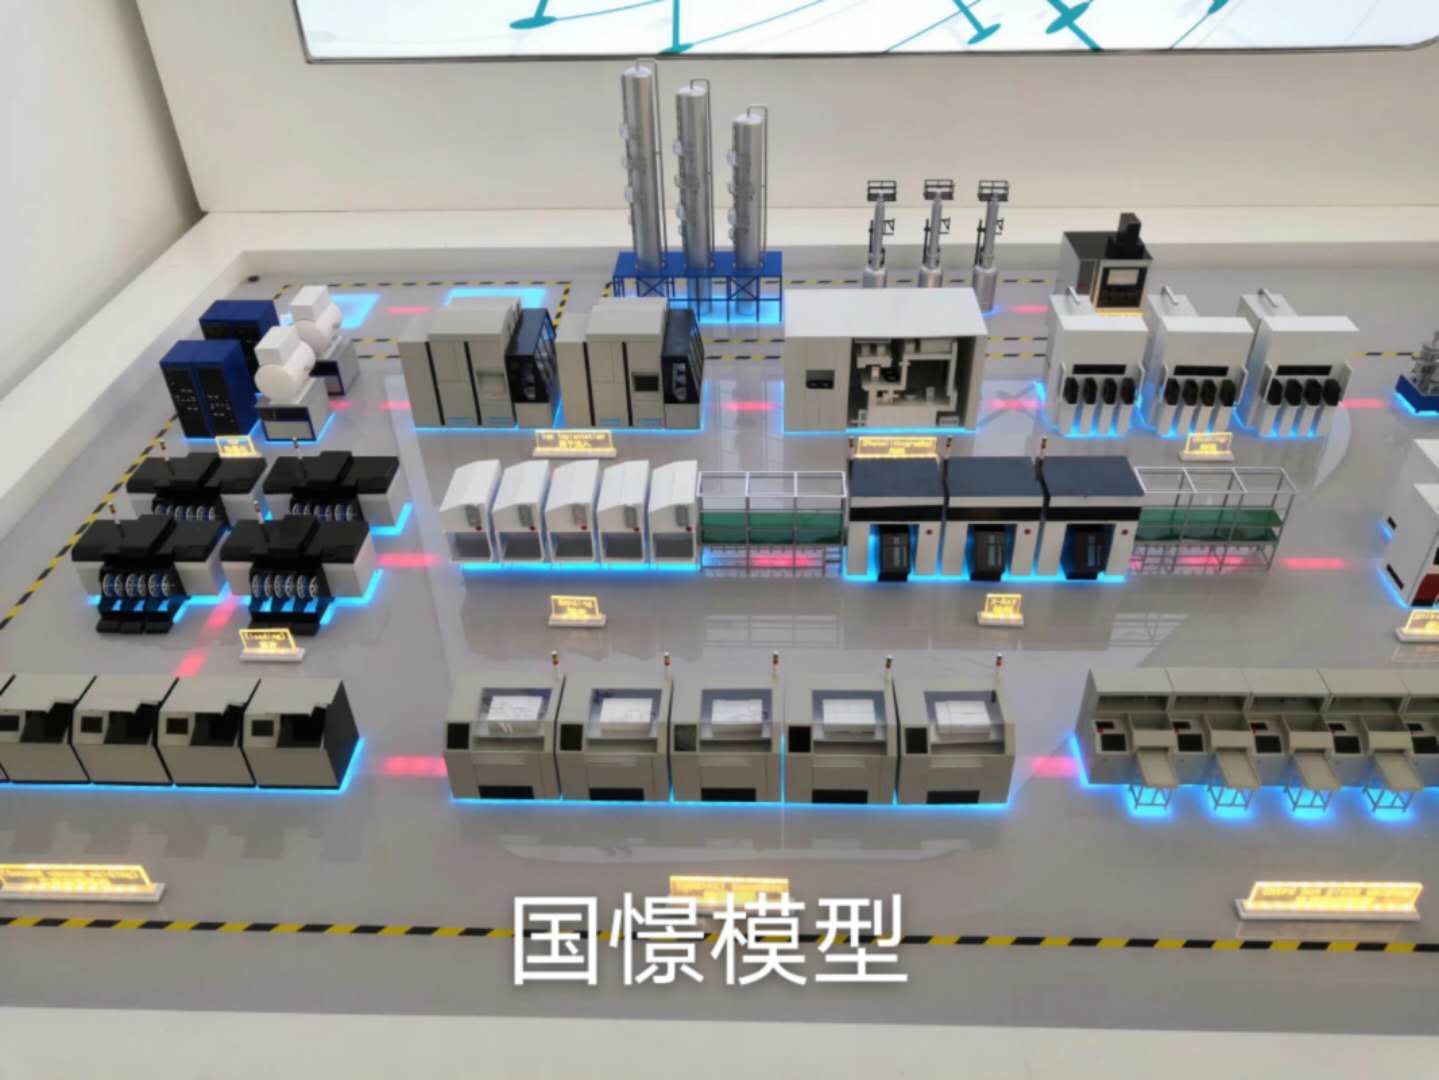 隆化县工业模型